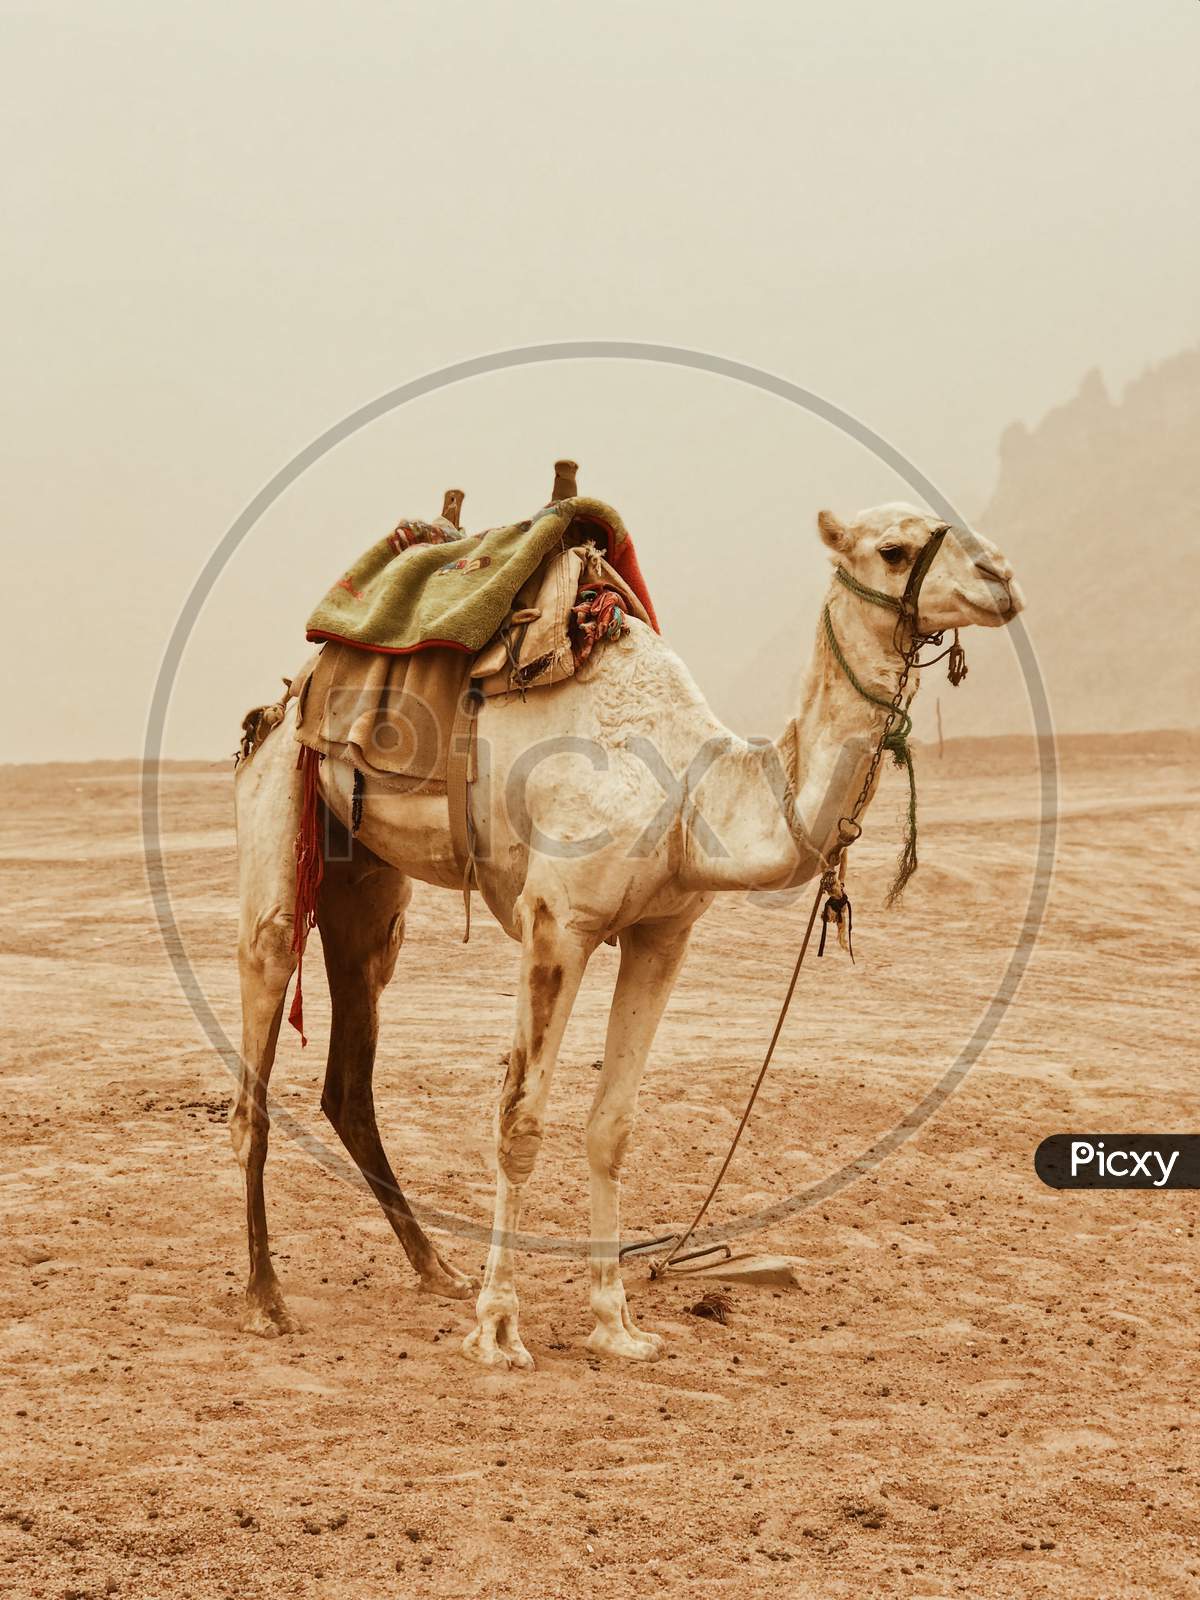 Camel at the desert8